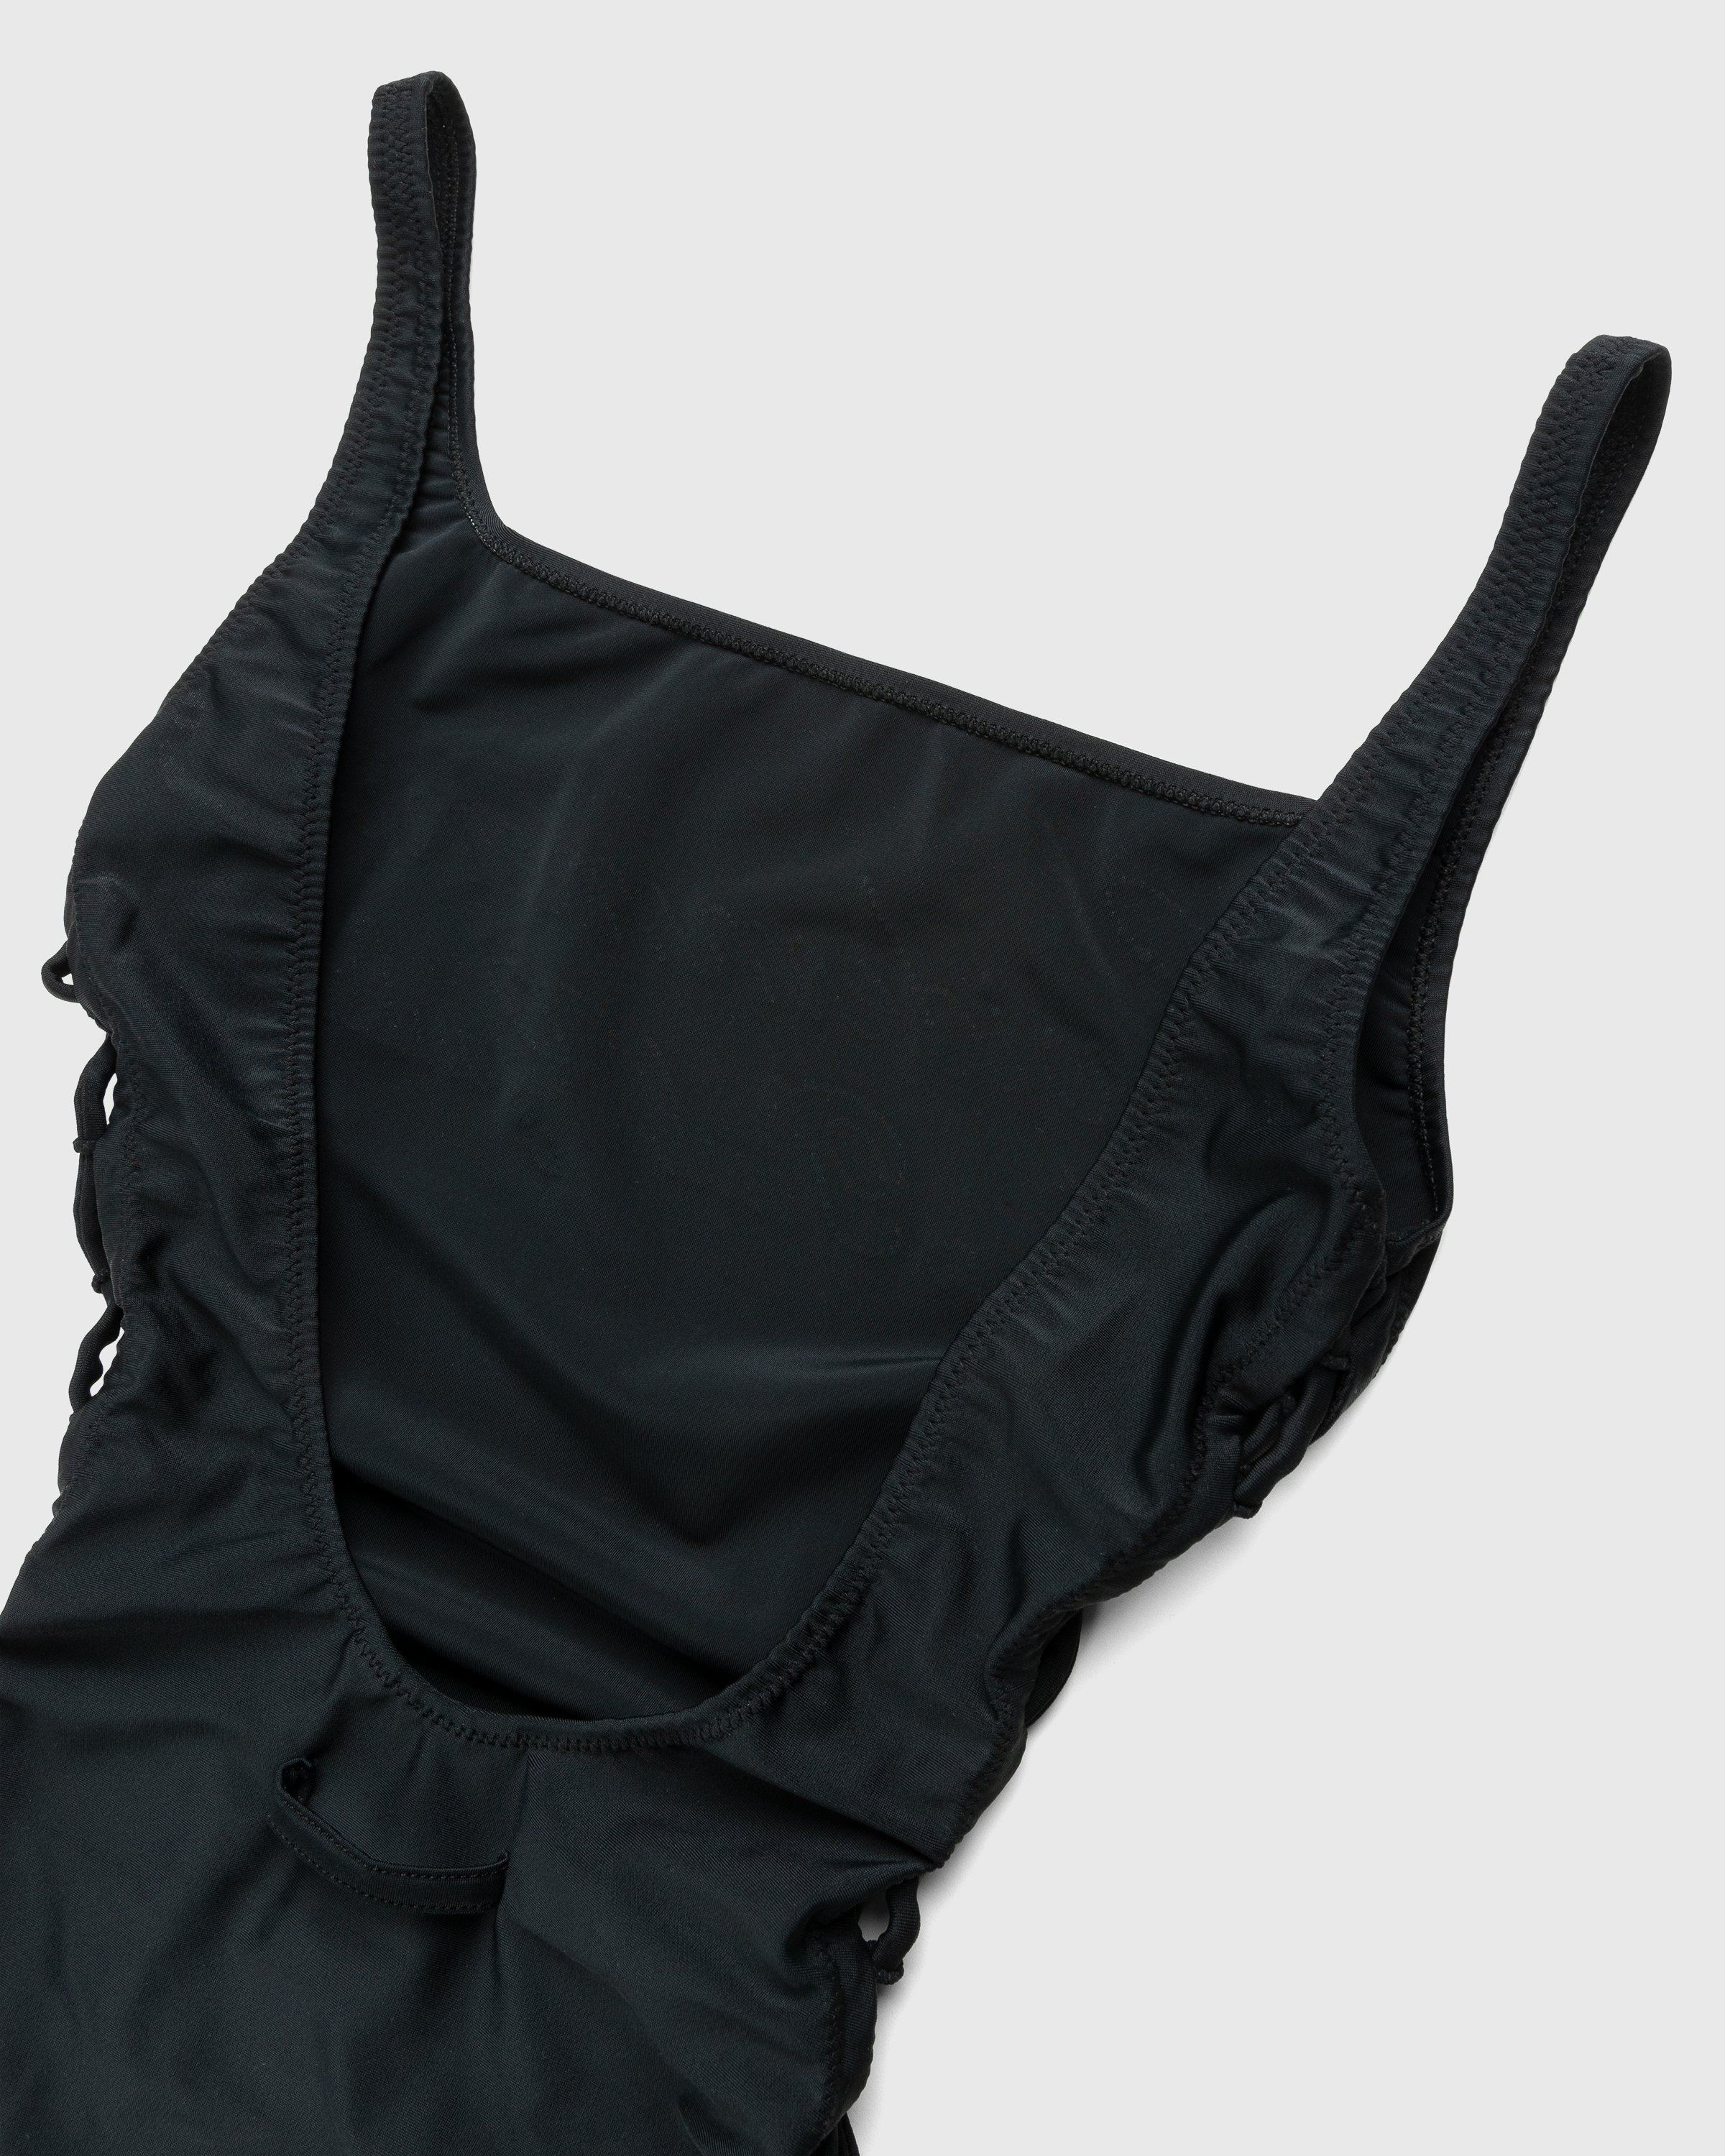 Jean Paul Gaultier - Évidemment Swimsuit Black - Clothing - Black - Image 6